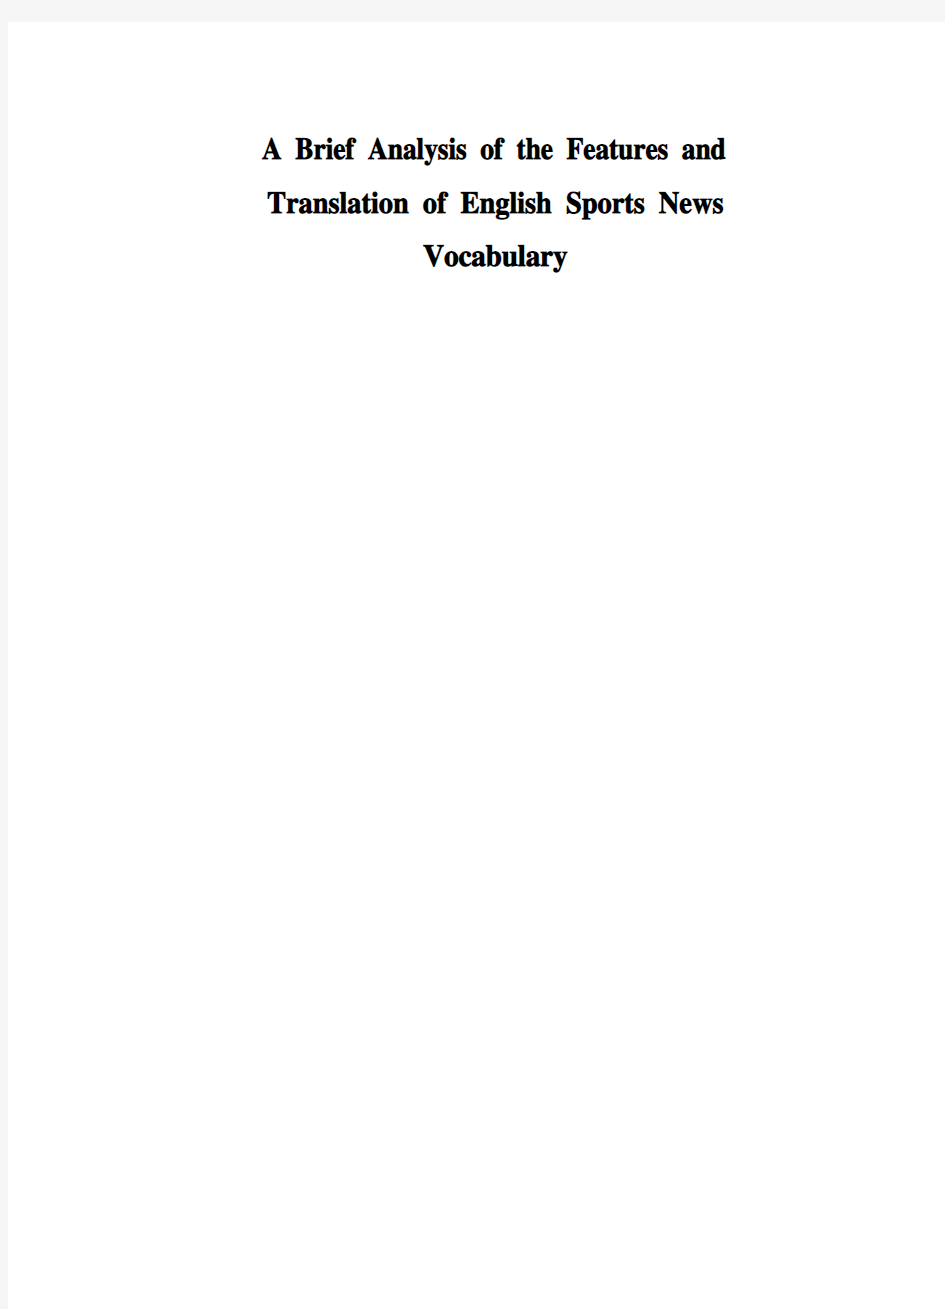 大学毕业论文-—浅析英语体育新闻词汇的特点及翻译策略